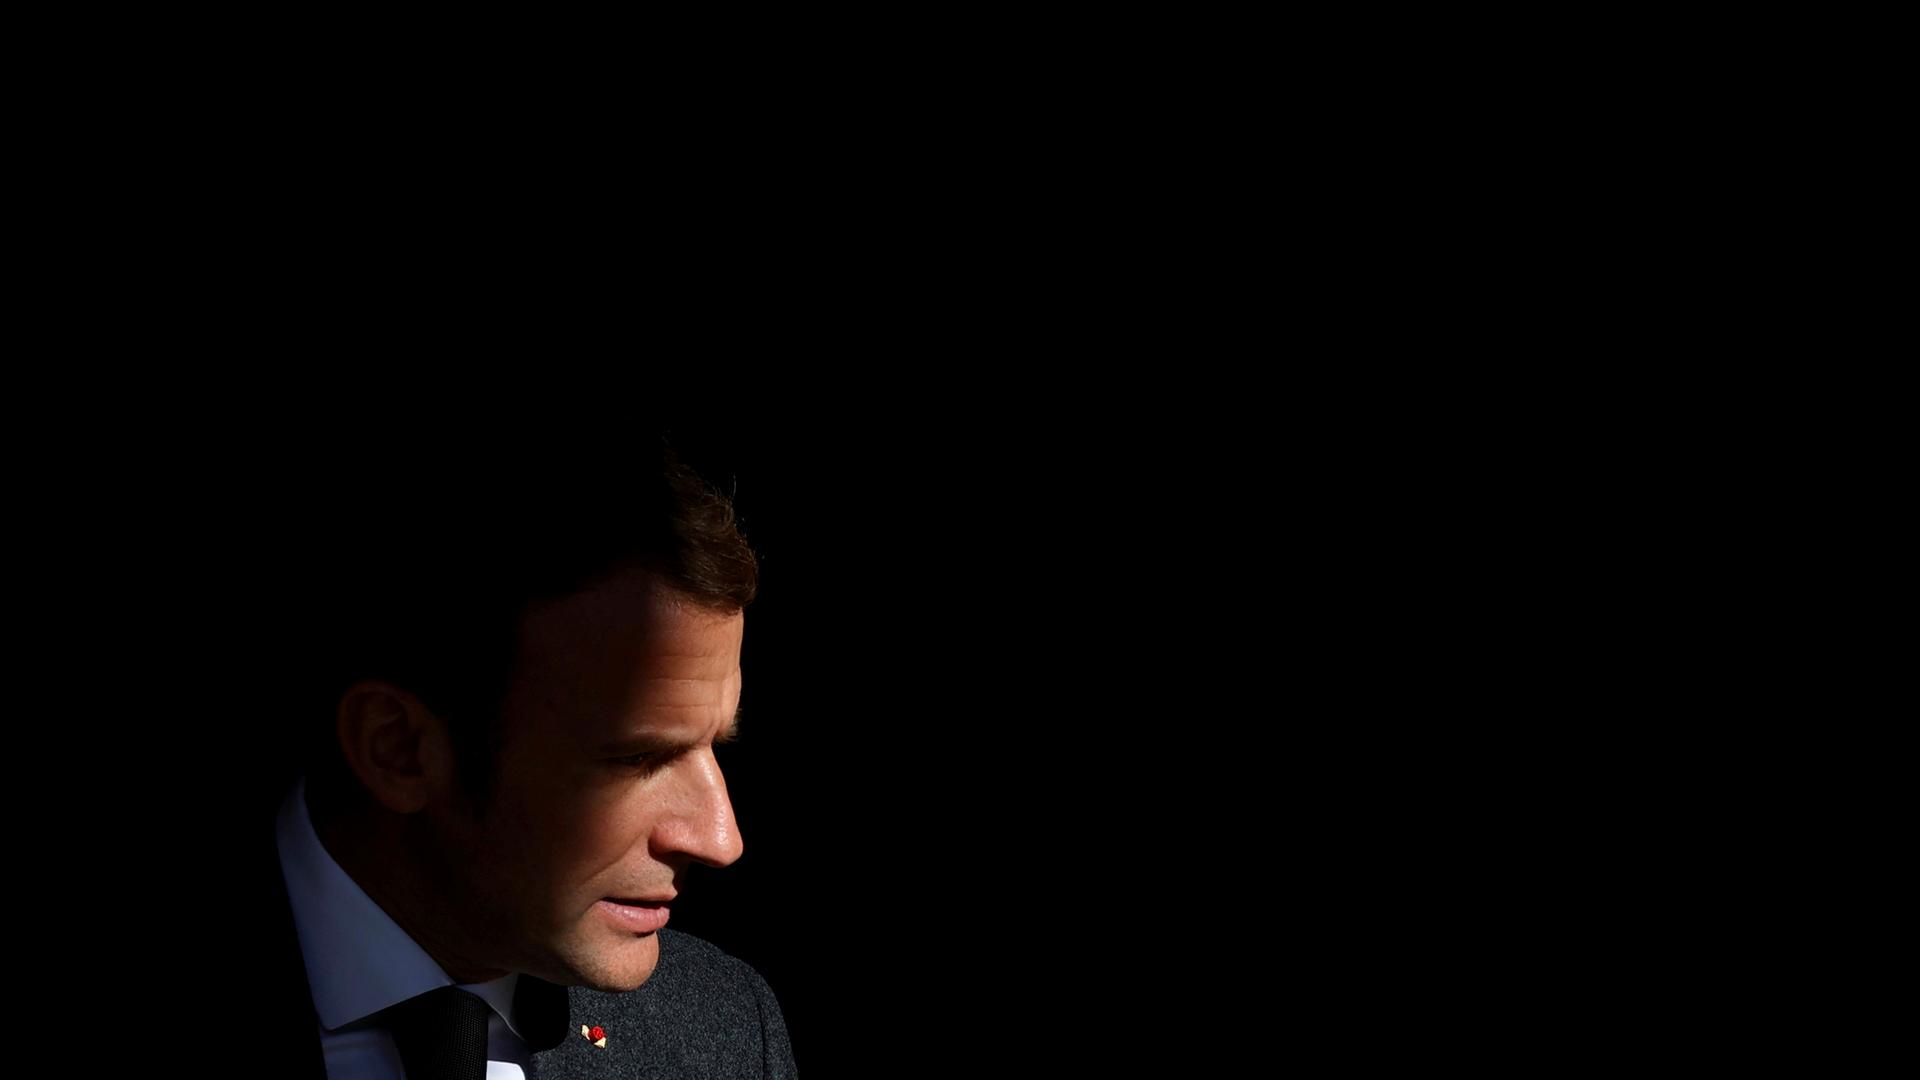 Frankreichs Präsident Emmanuel Macron im Profil vor dunkelm Hintergrund